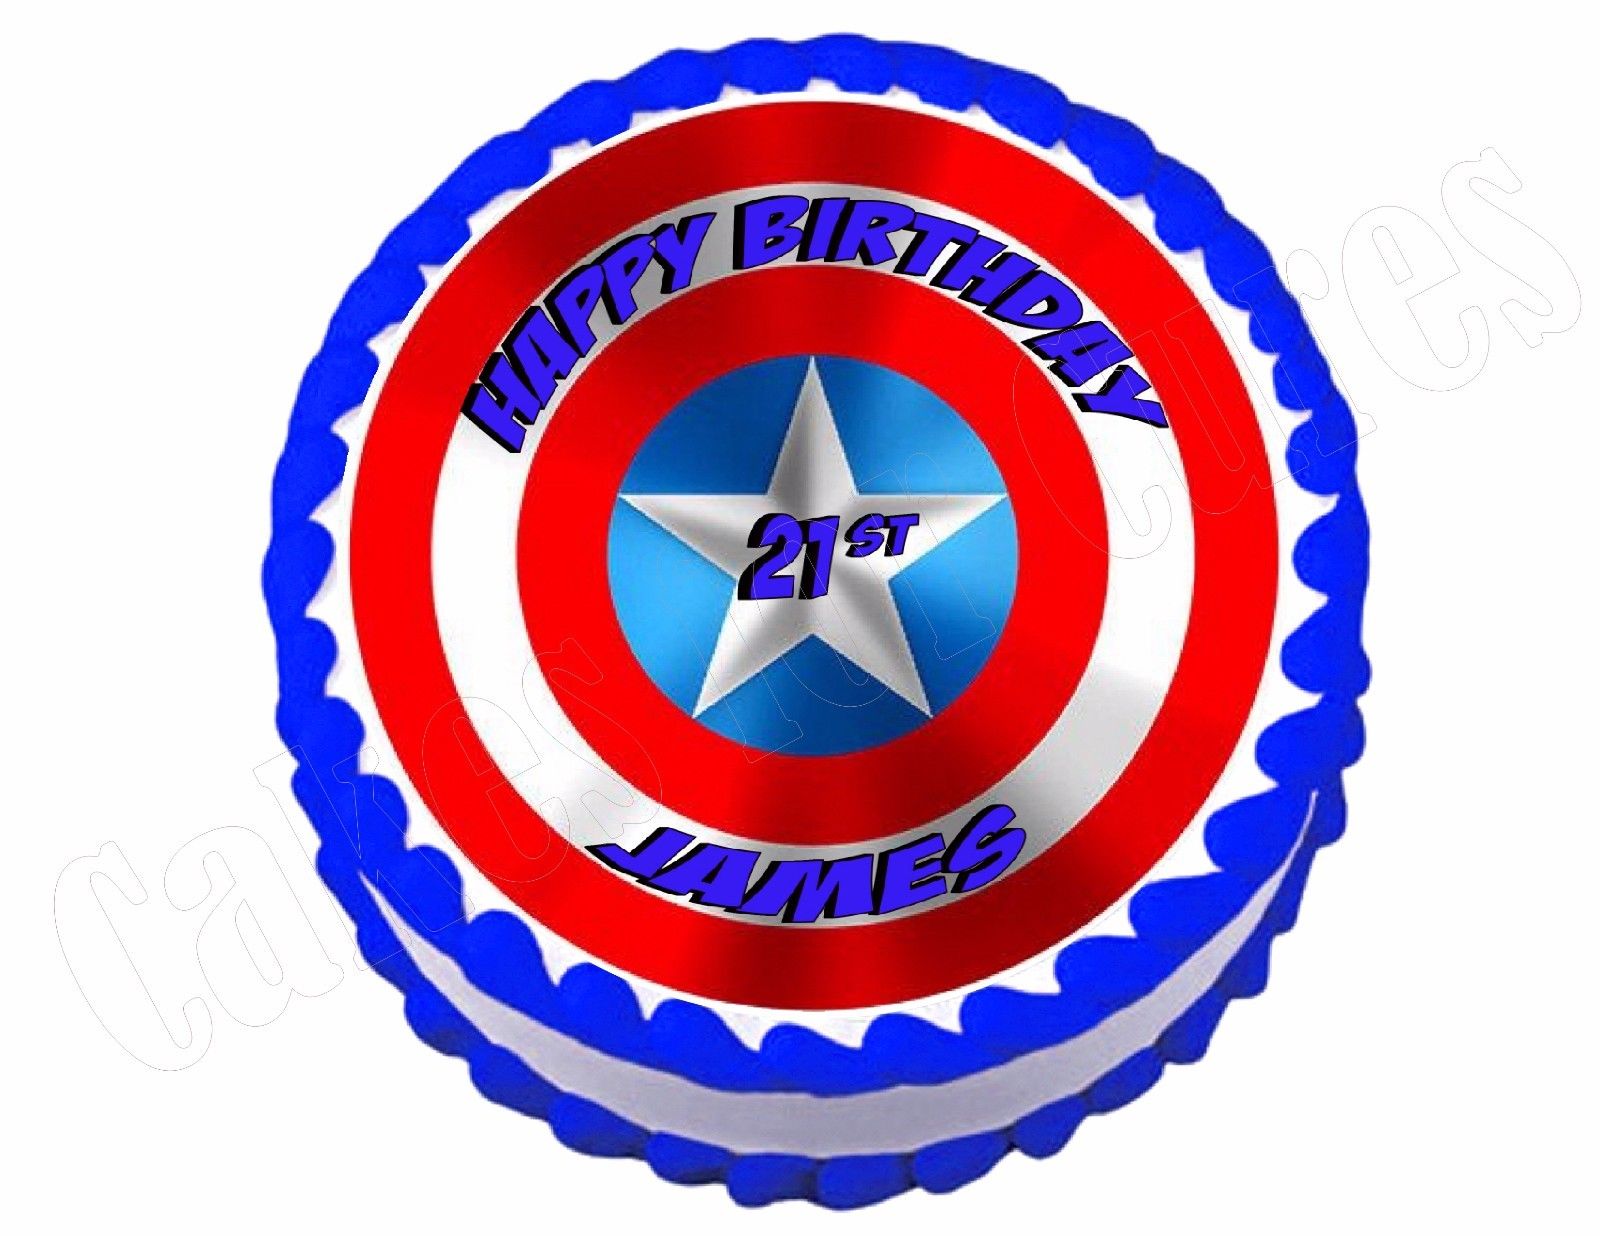 Captain America Shield Designer Cake Delivery in Delhi NCR - ₹2,349.00 Cake  Express